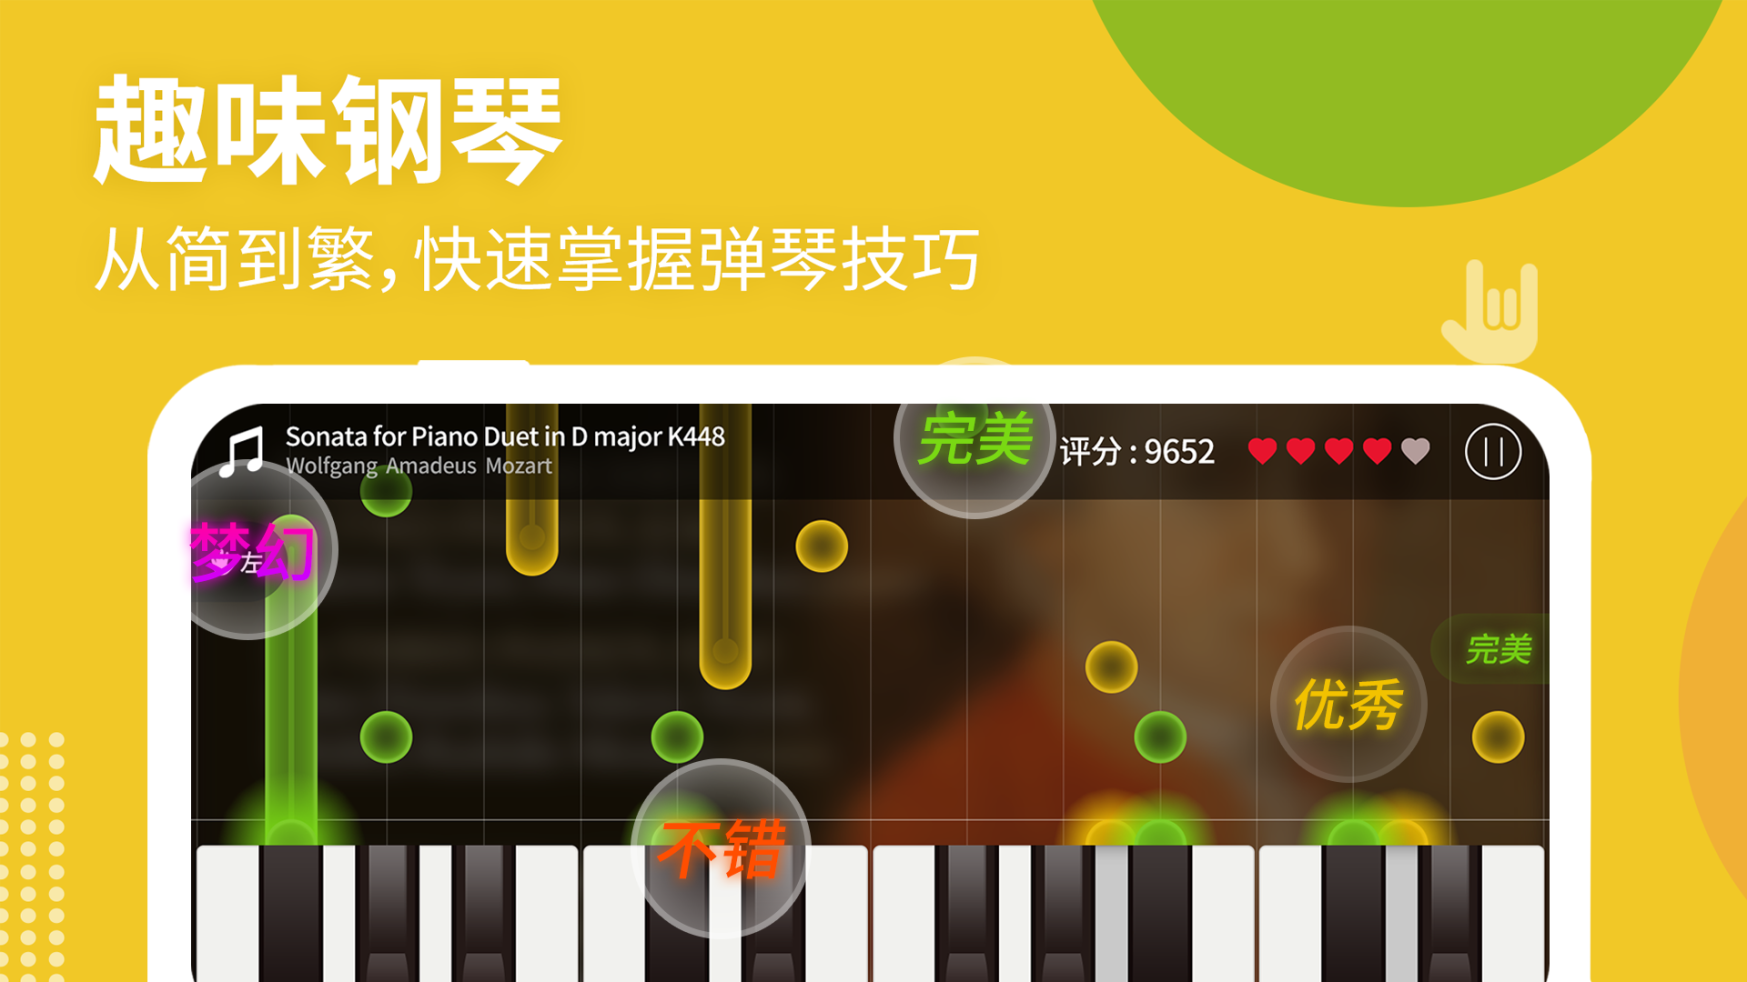 钢琴键盘模拟器app官方下载 v2.6截图1